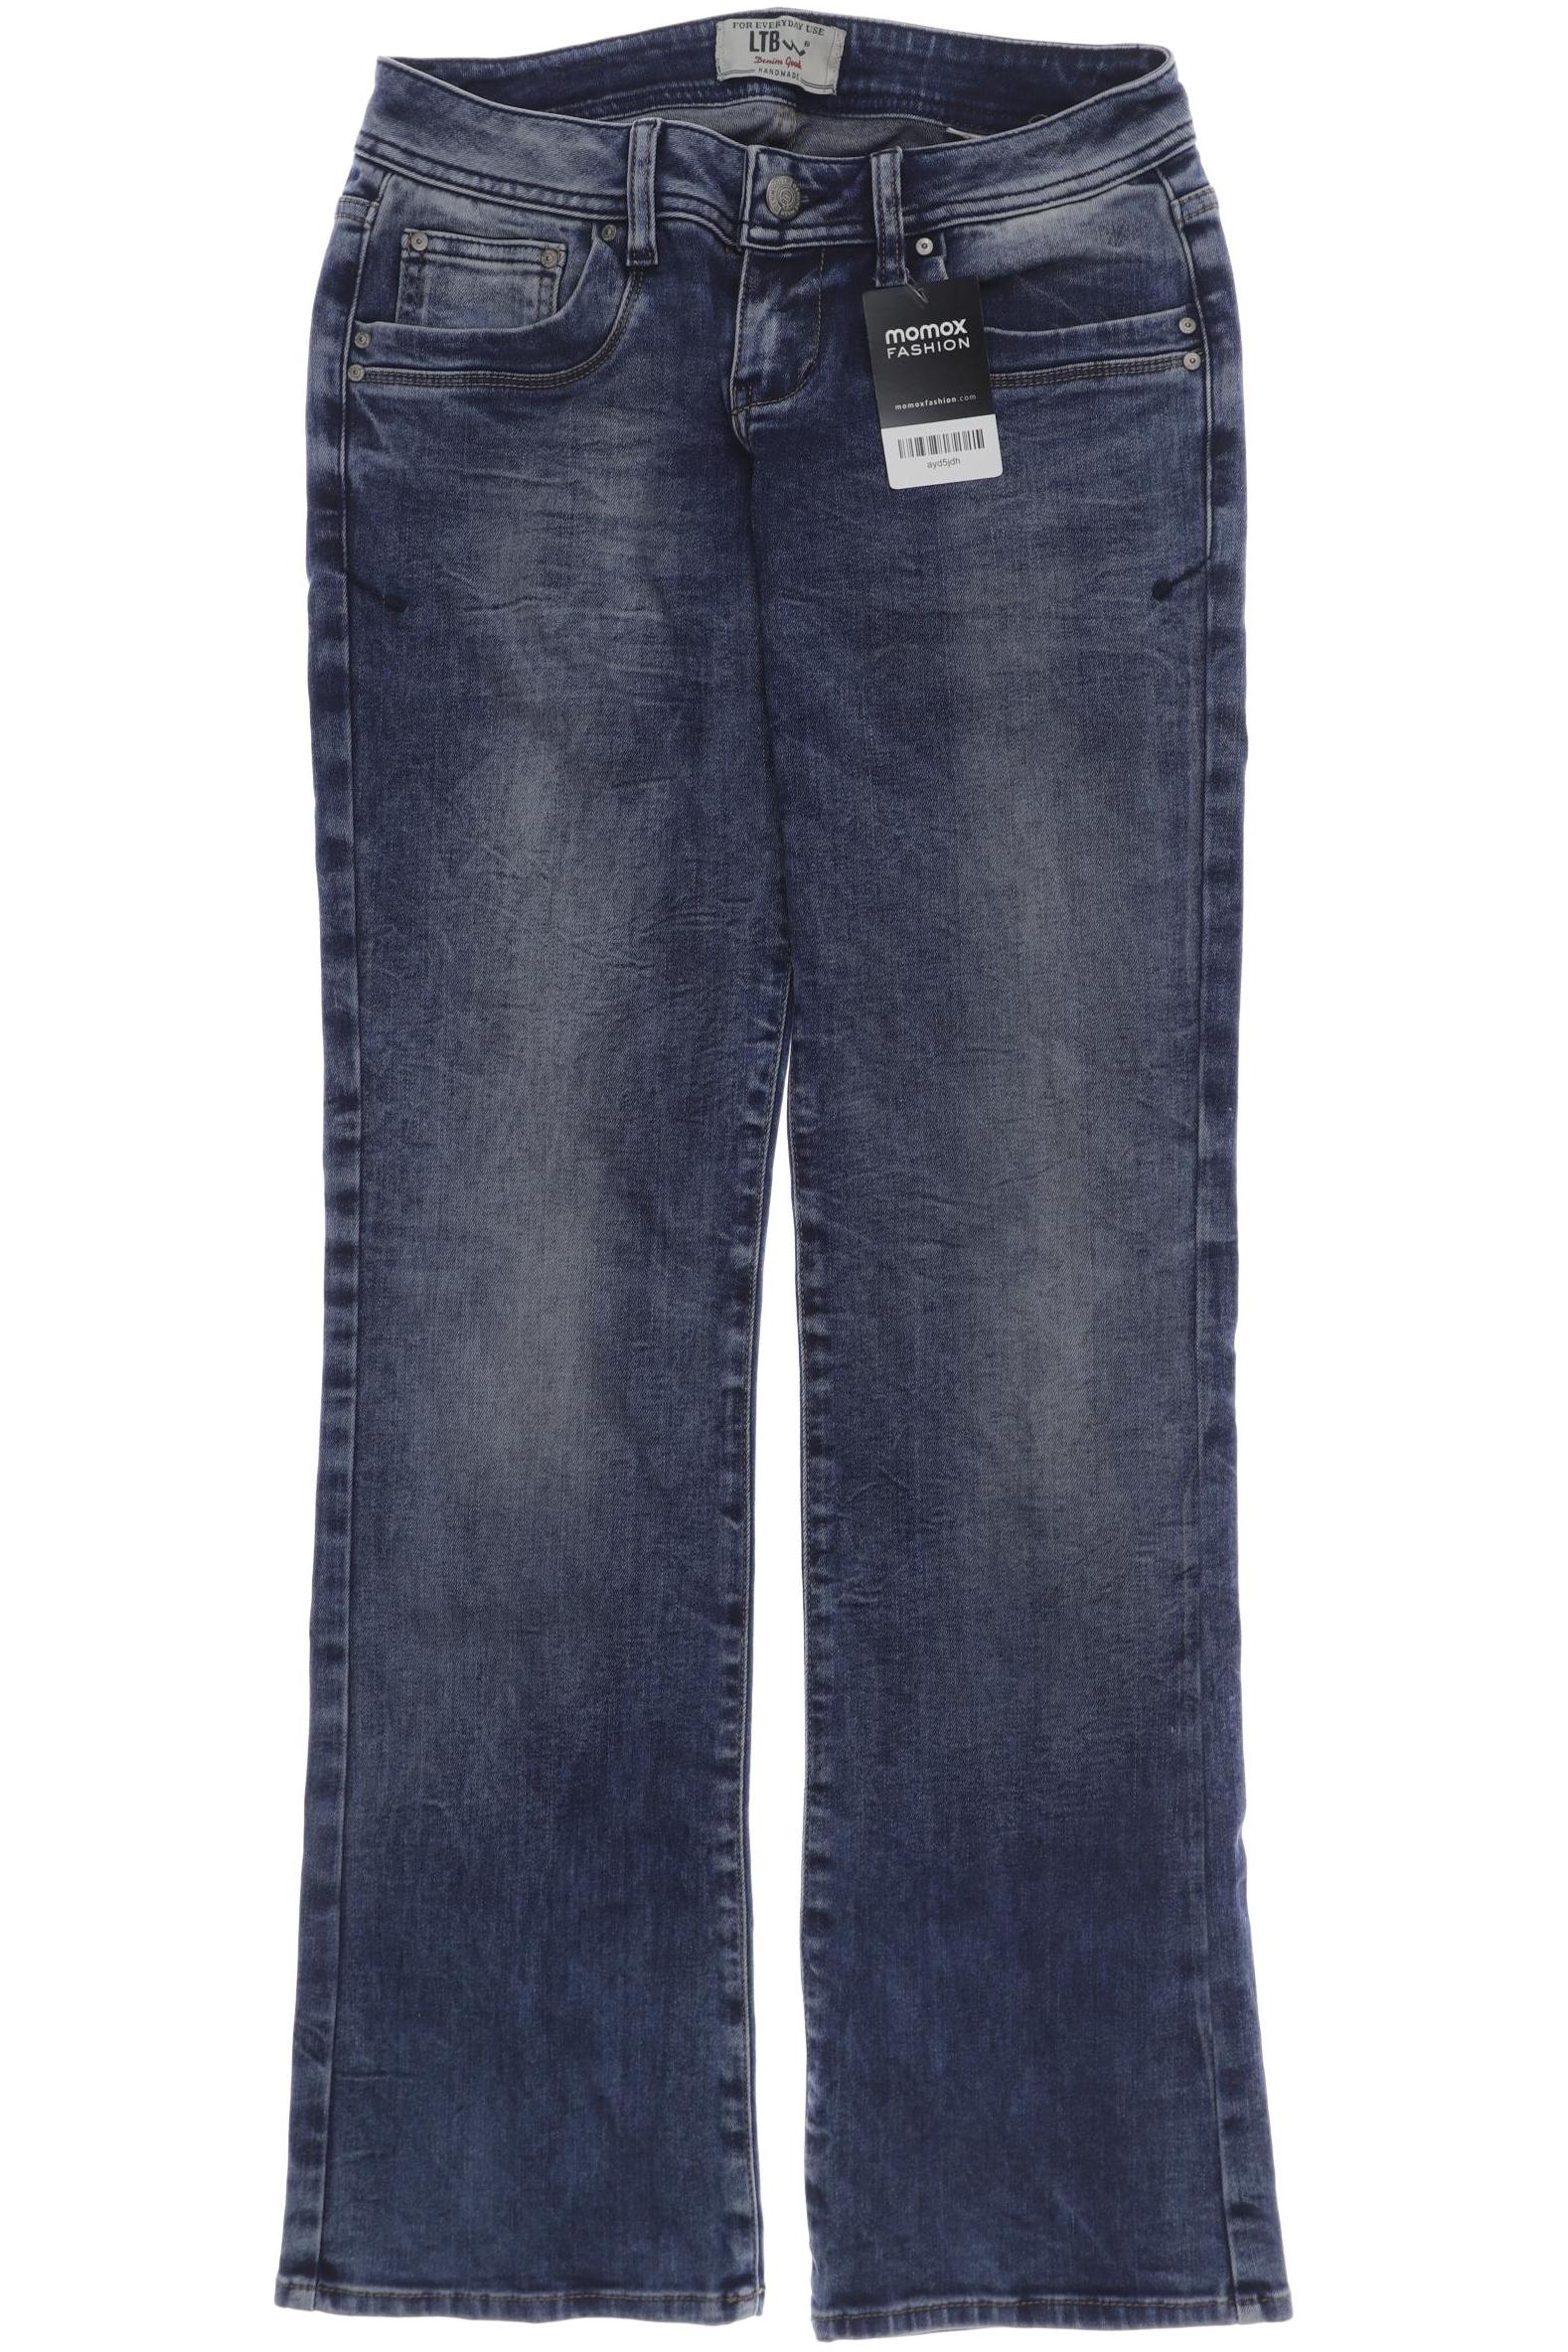 LTB Damen Jeans, blau, Gr. 38 von LTB